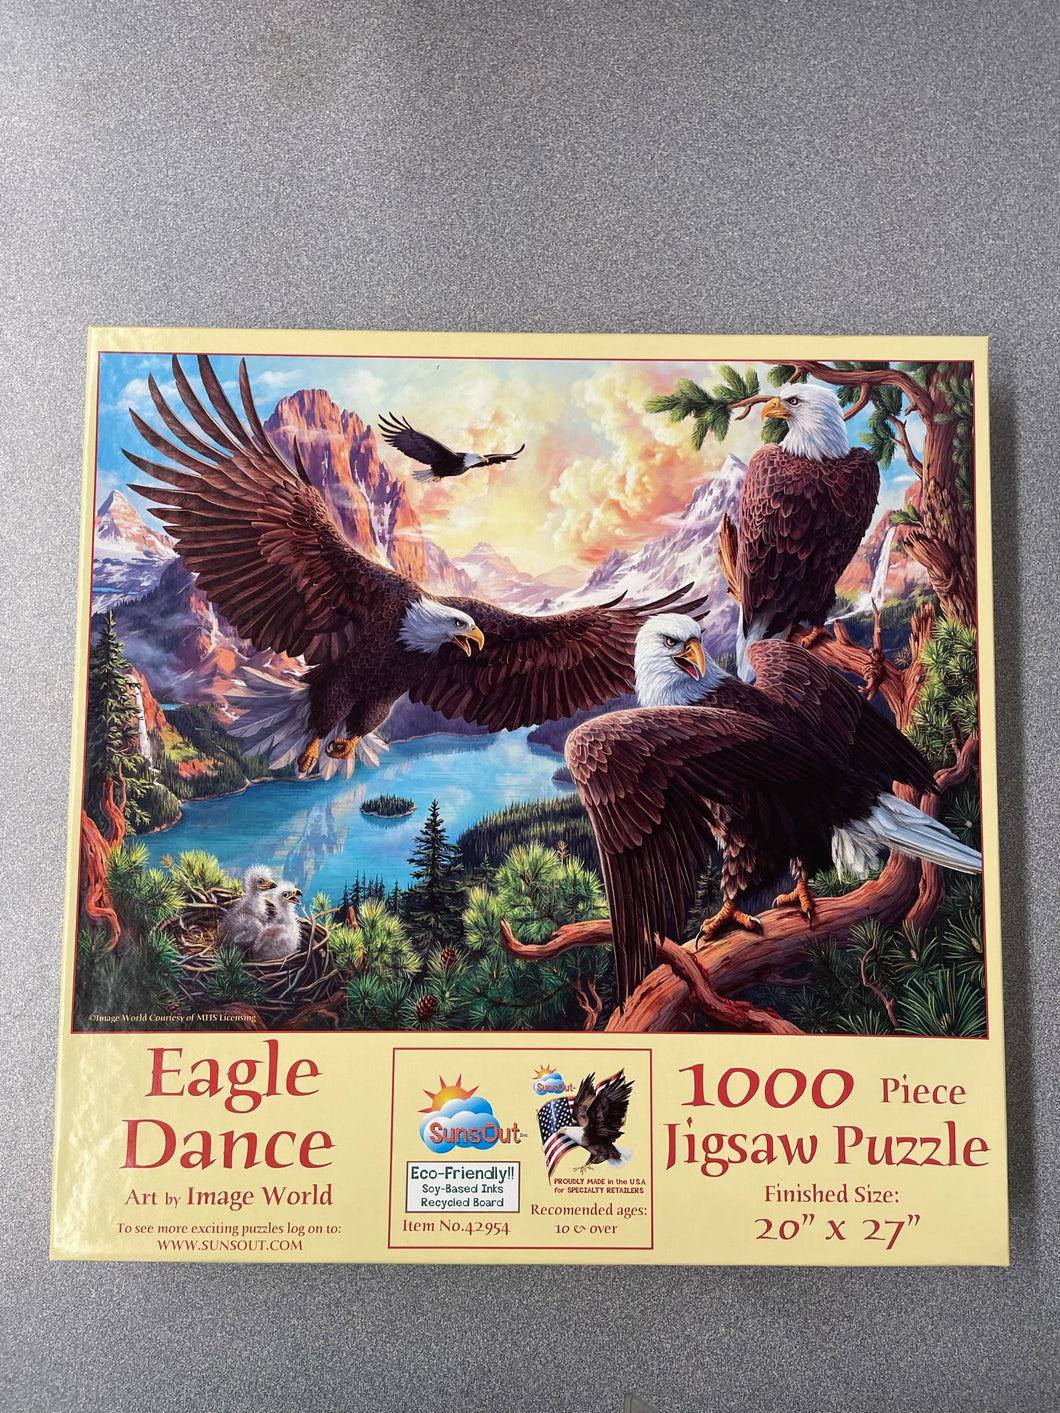 PUZZLE: Eagle Dance, CG 8/23